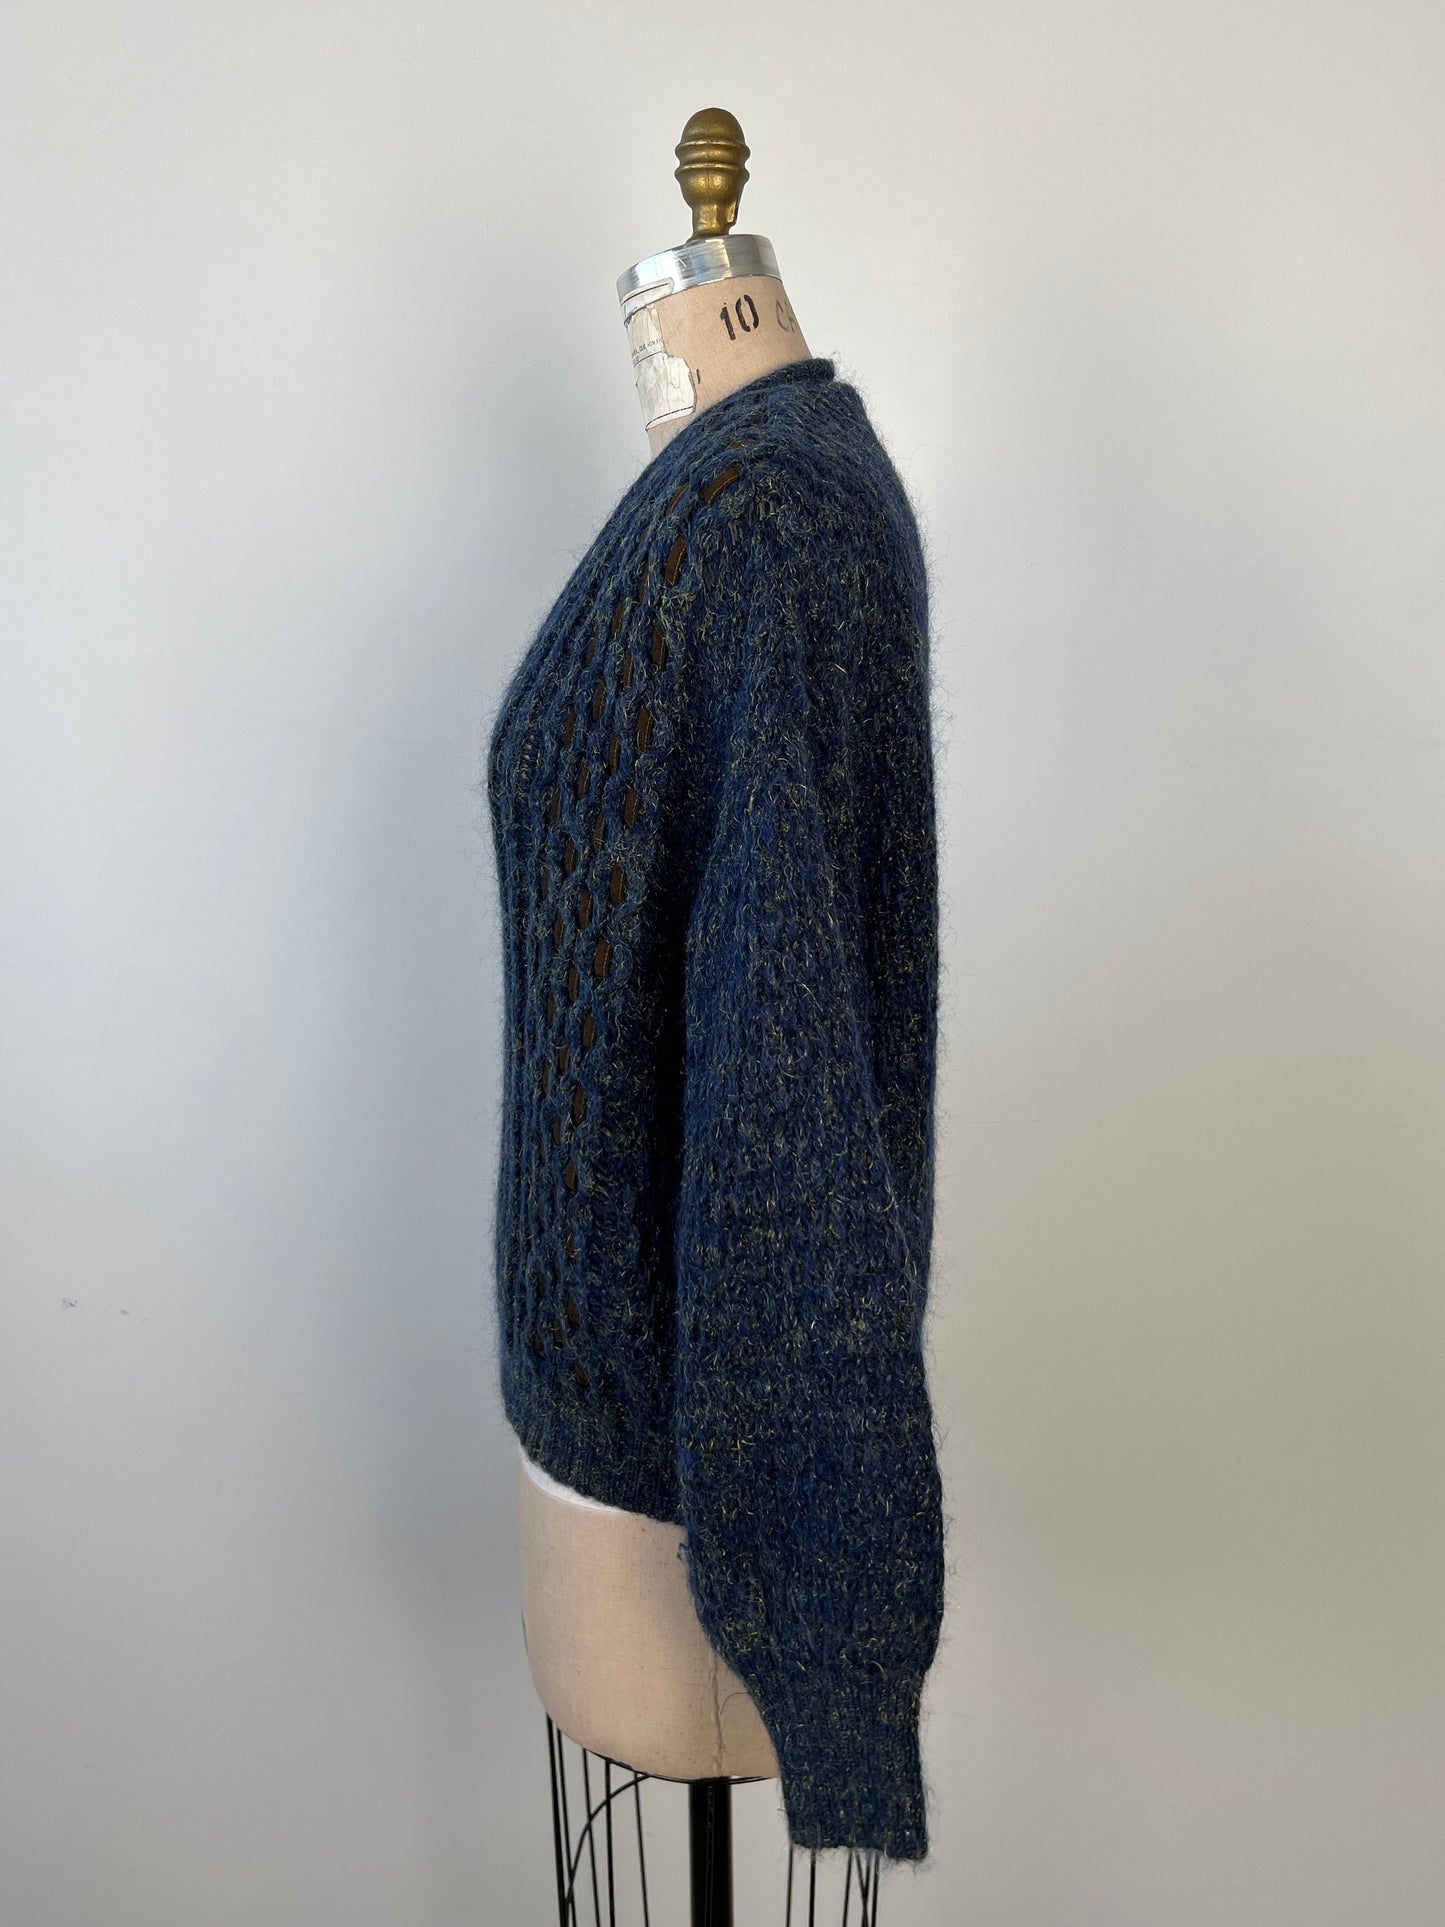 Chandail vintage en tricot marine à rubans  (L)